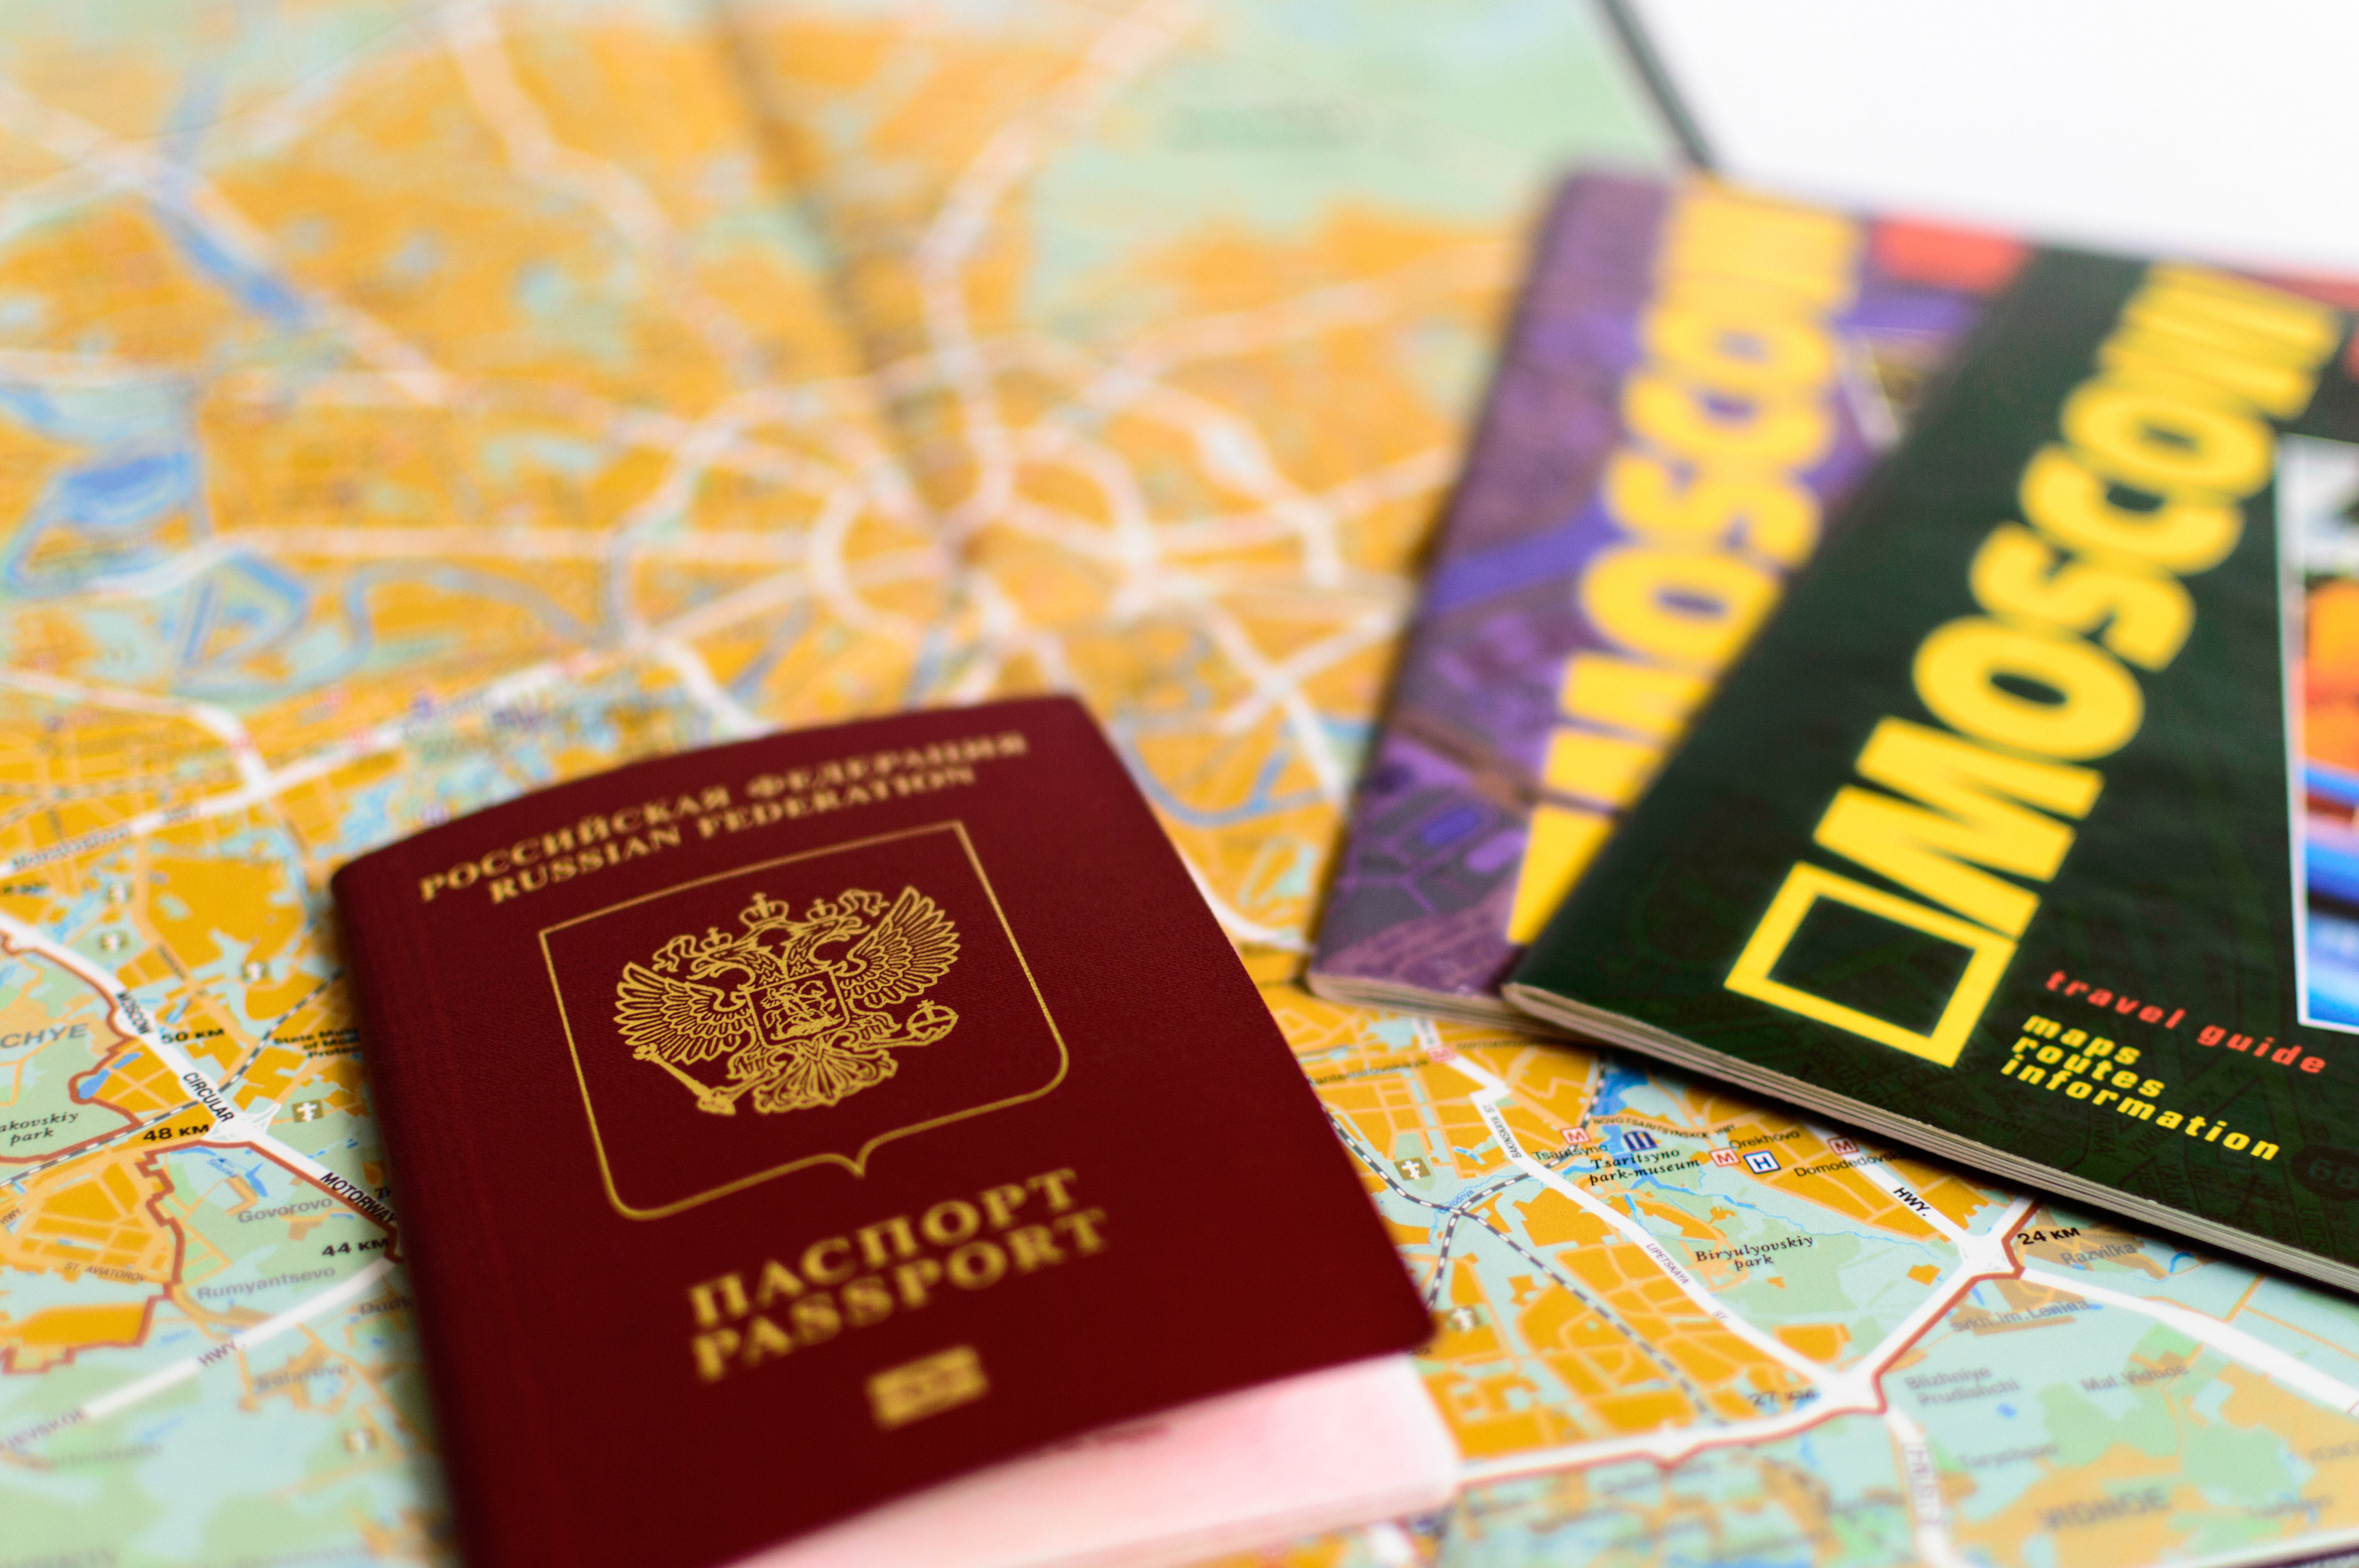 Vietnam e-visa requirements for Russians